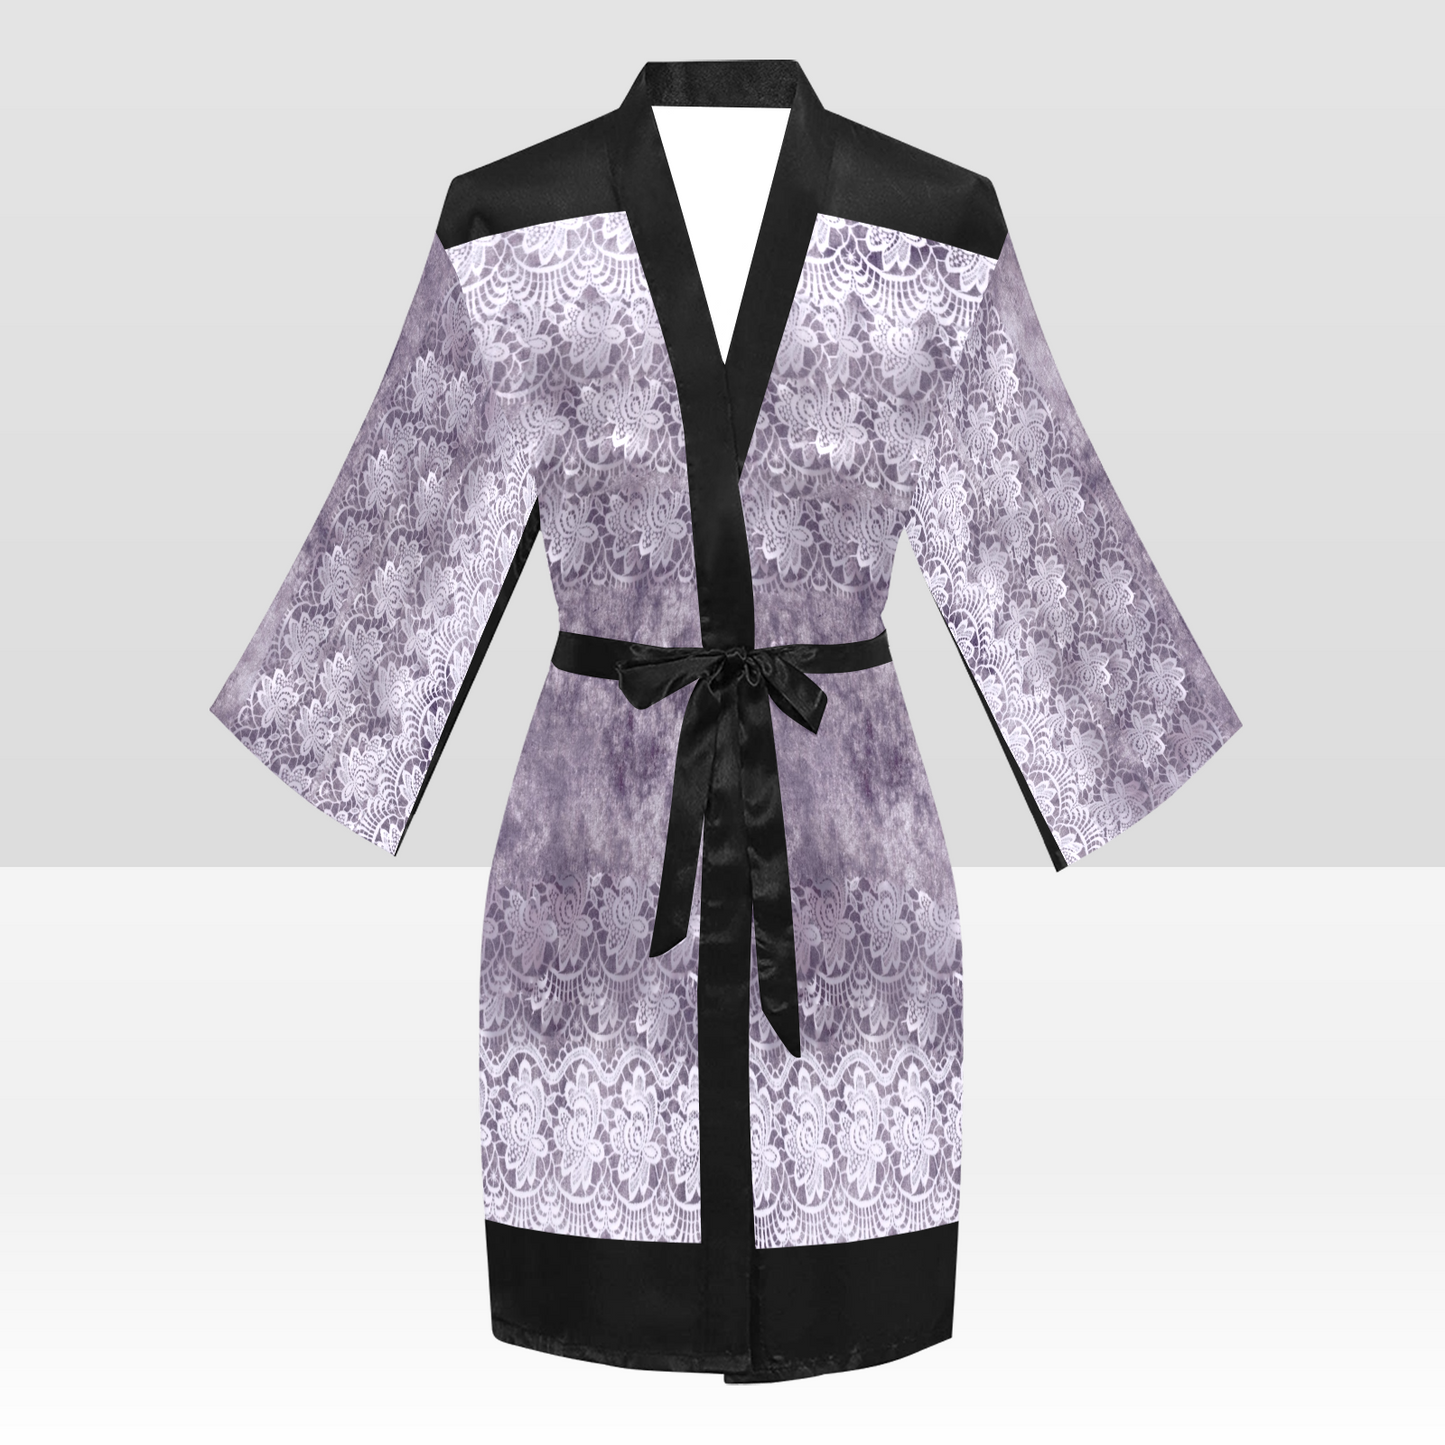 Victorian Lace Kimono Robe, Black or White Trim, Sizes XS to 2XL, Design 39